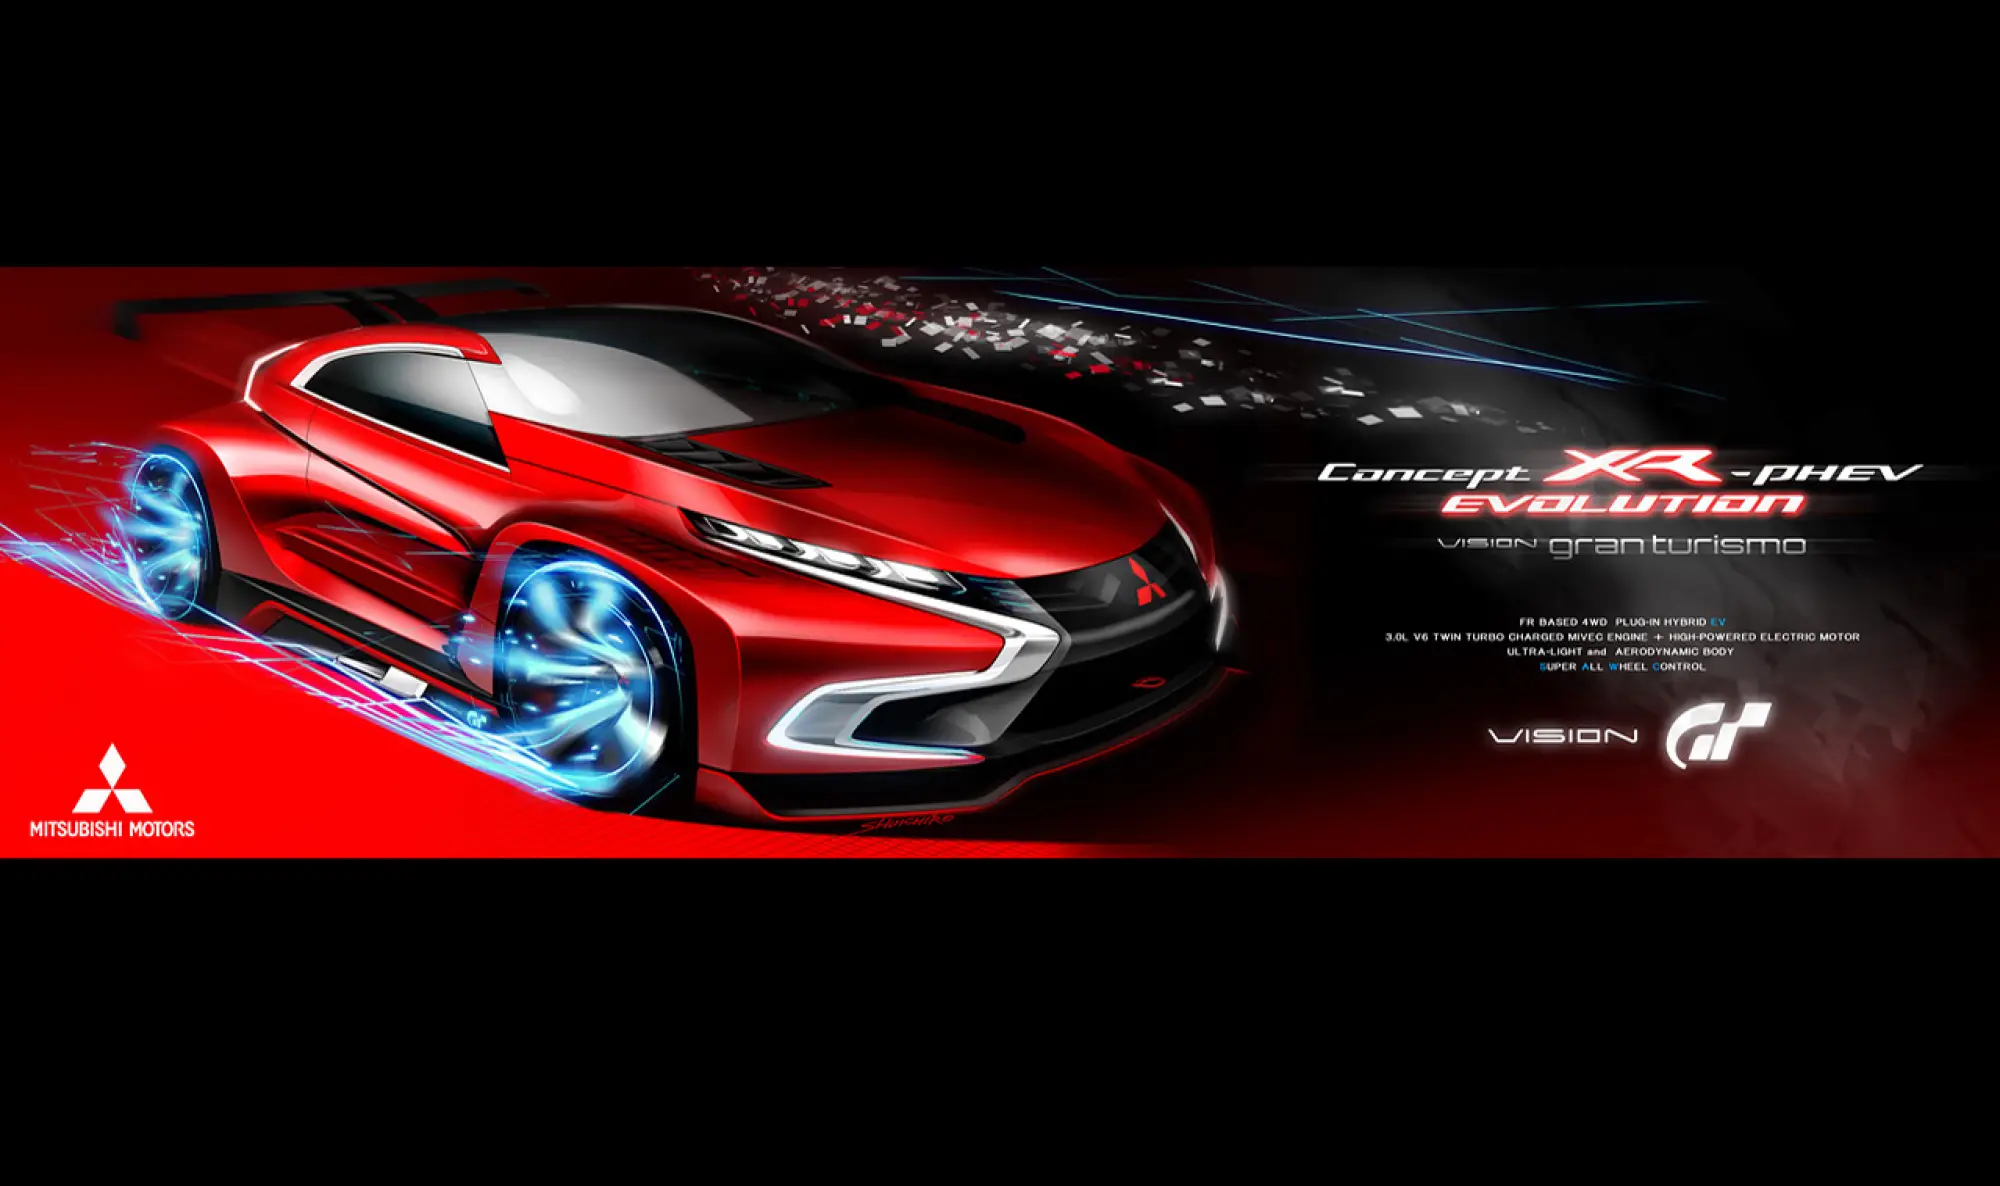 Mitsubishi Concept XR-PHEV Evolution Vision Gran Turismo concept - 16